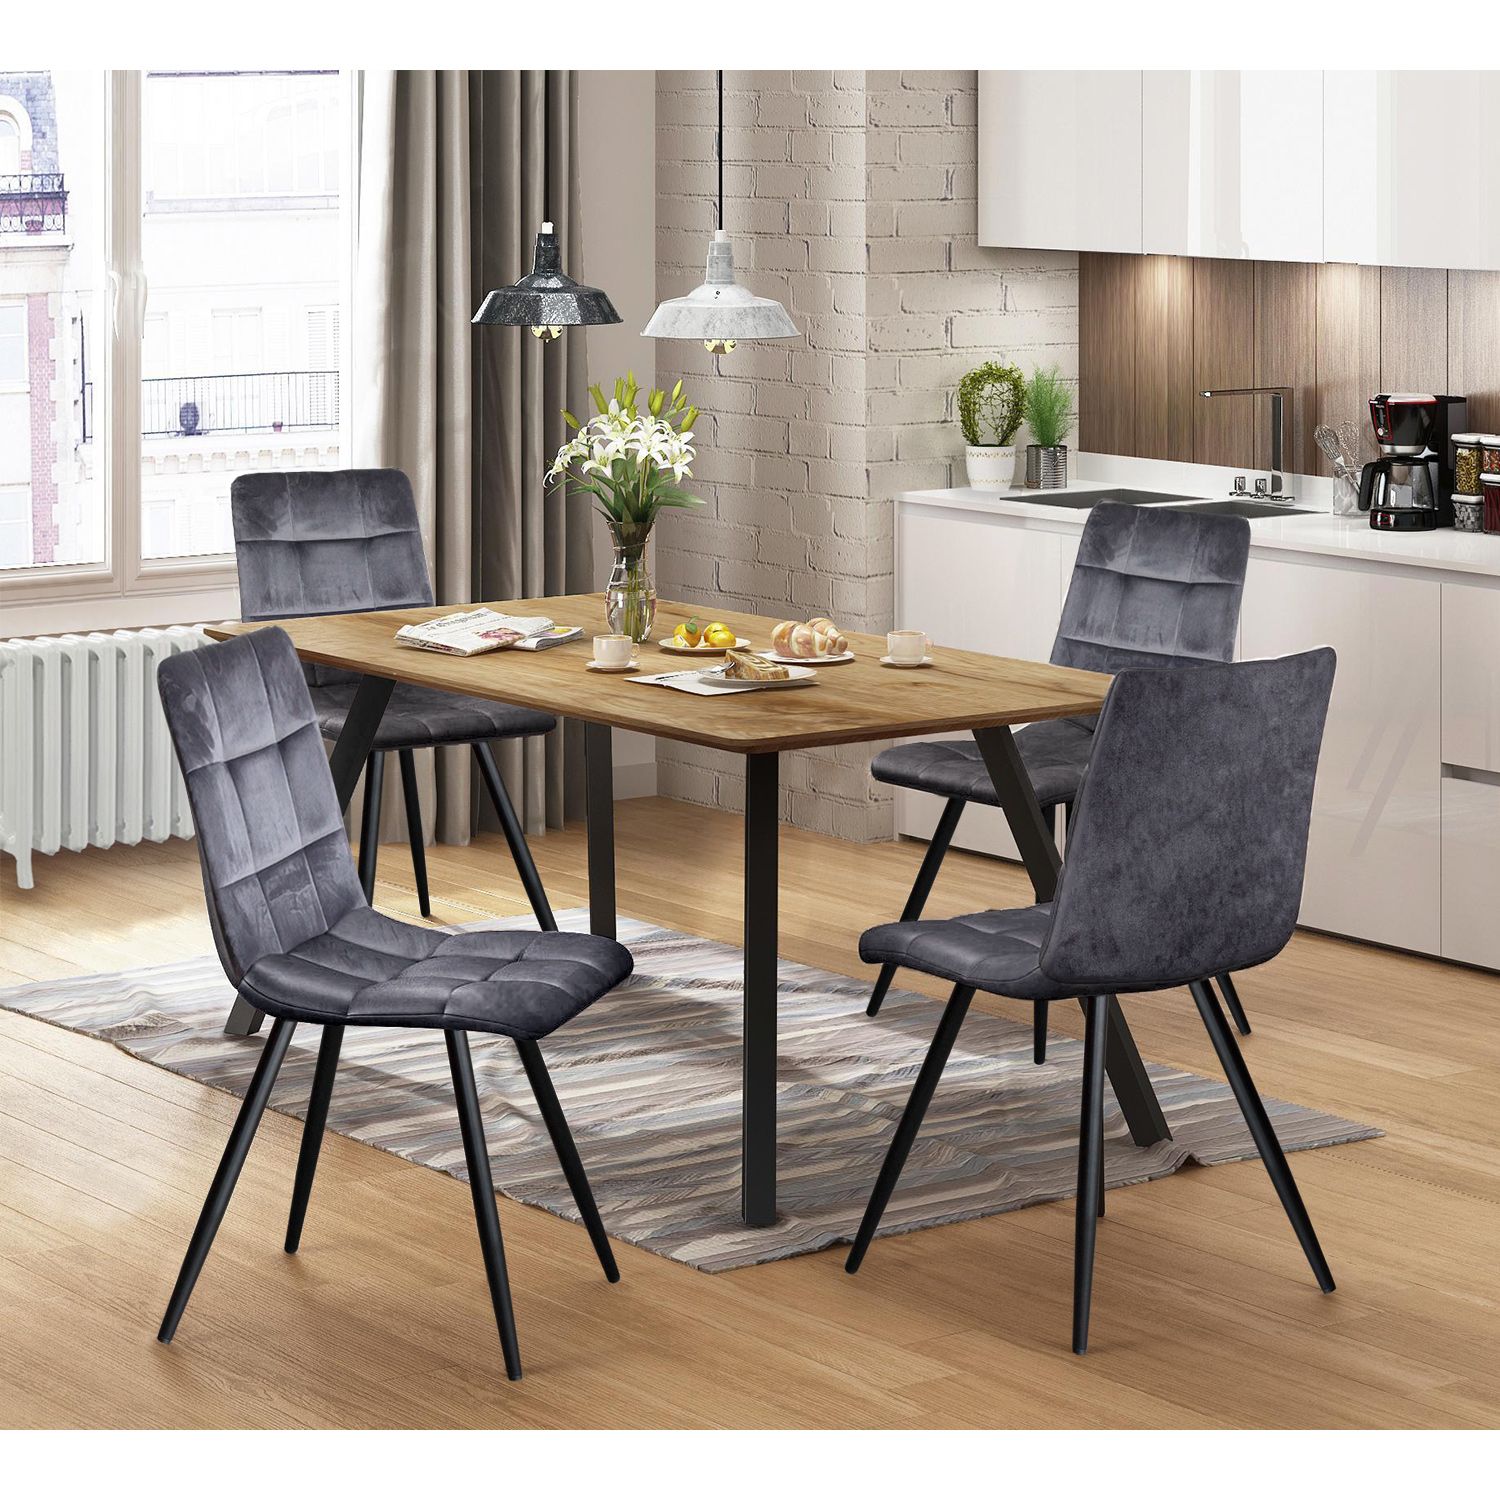 Jídelní stůl BERGEN dub + 4 židle BERGEN šedý samet - IDEA nábytek